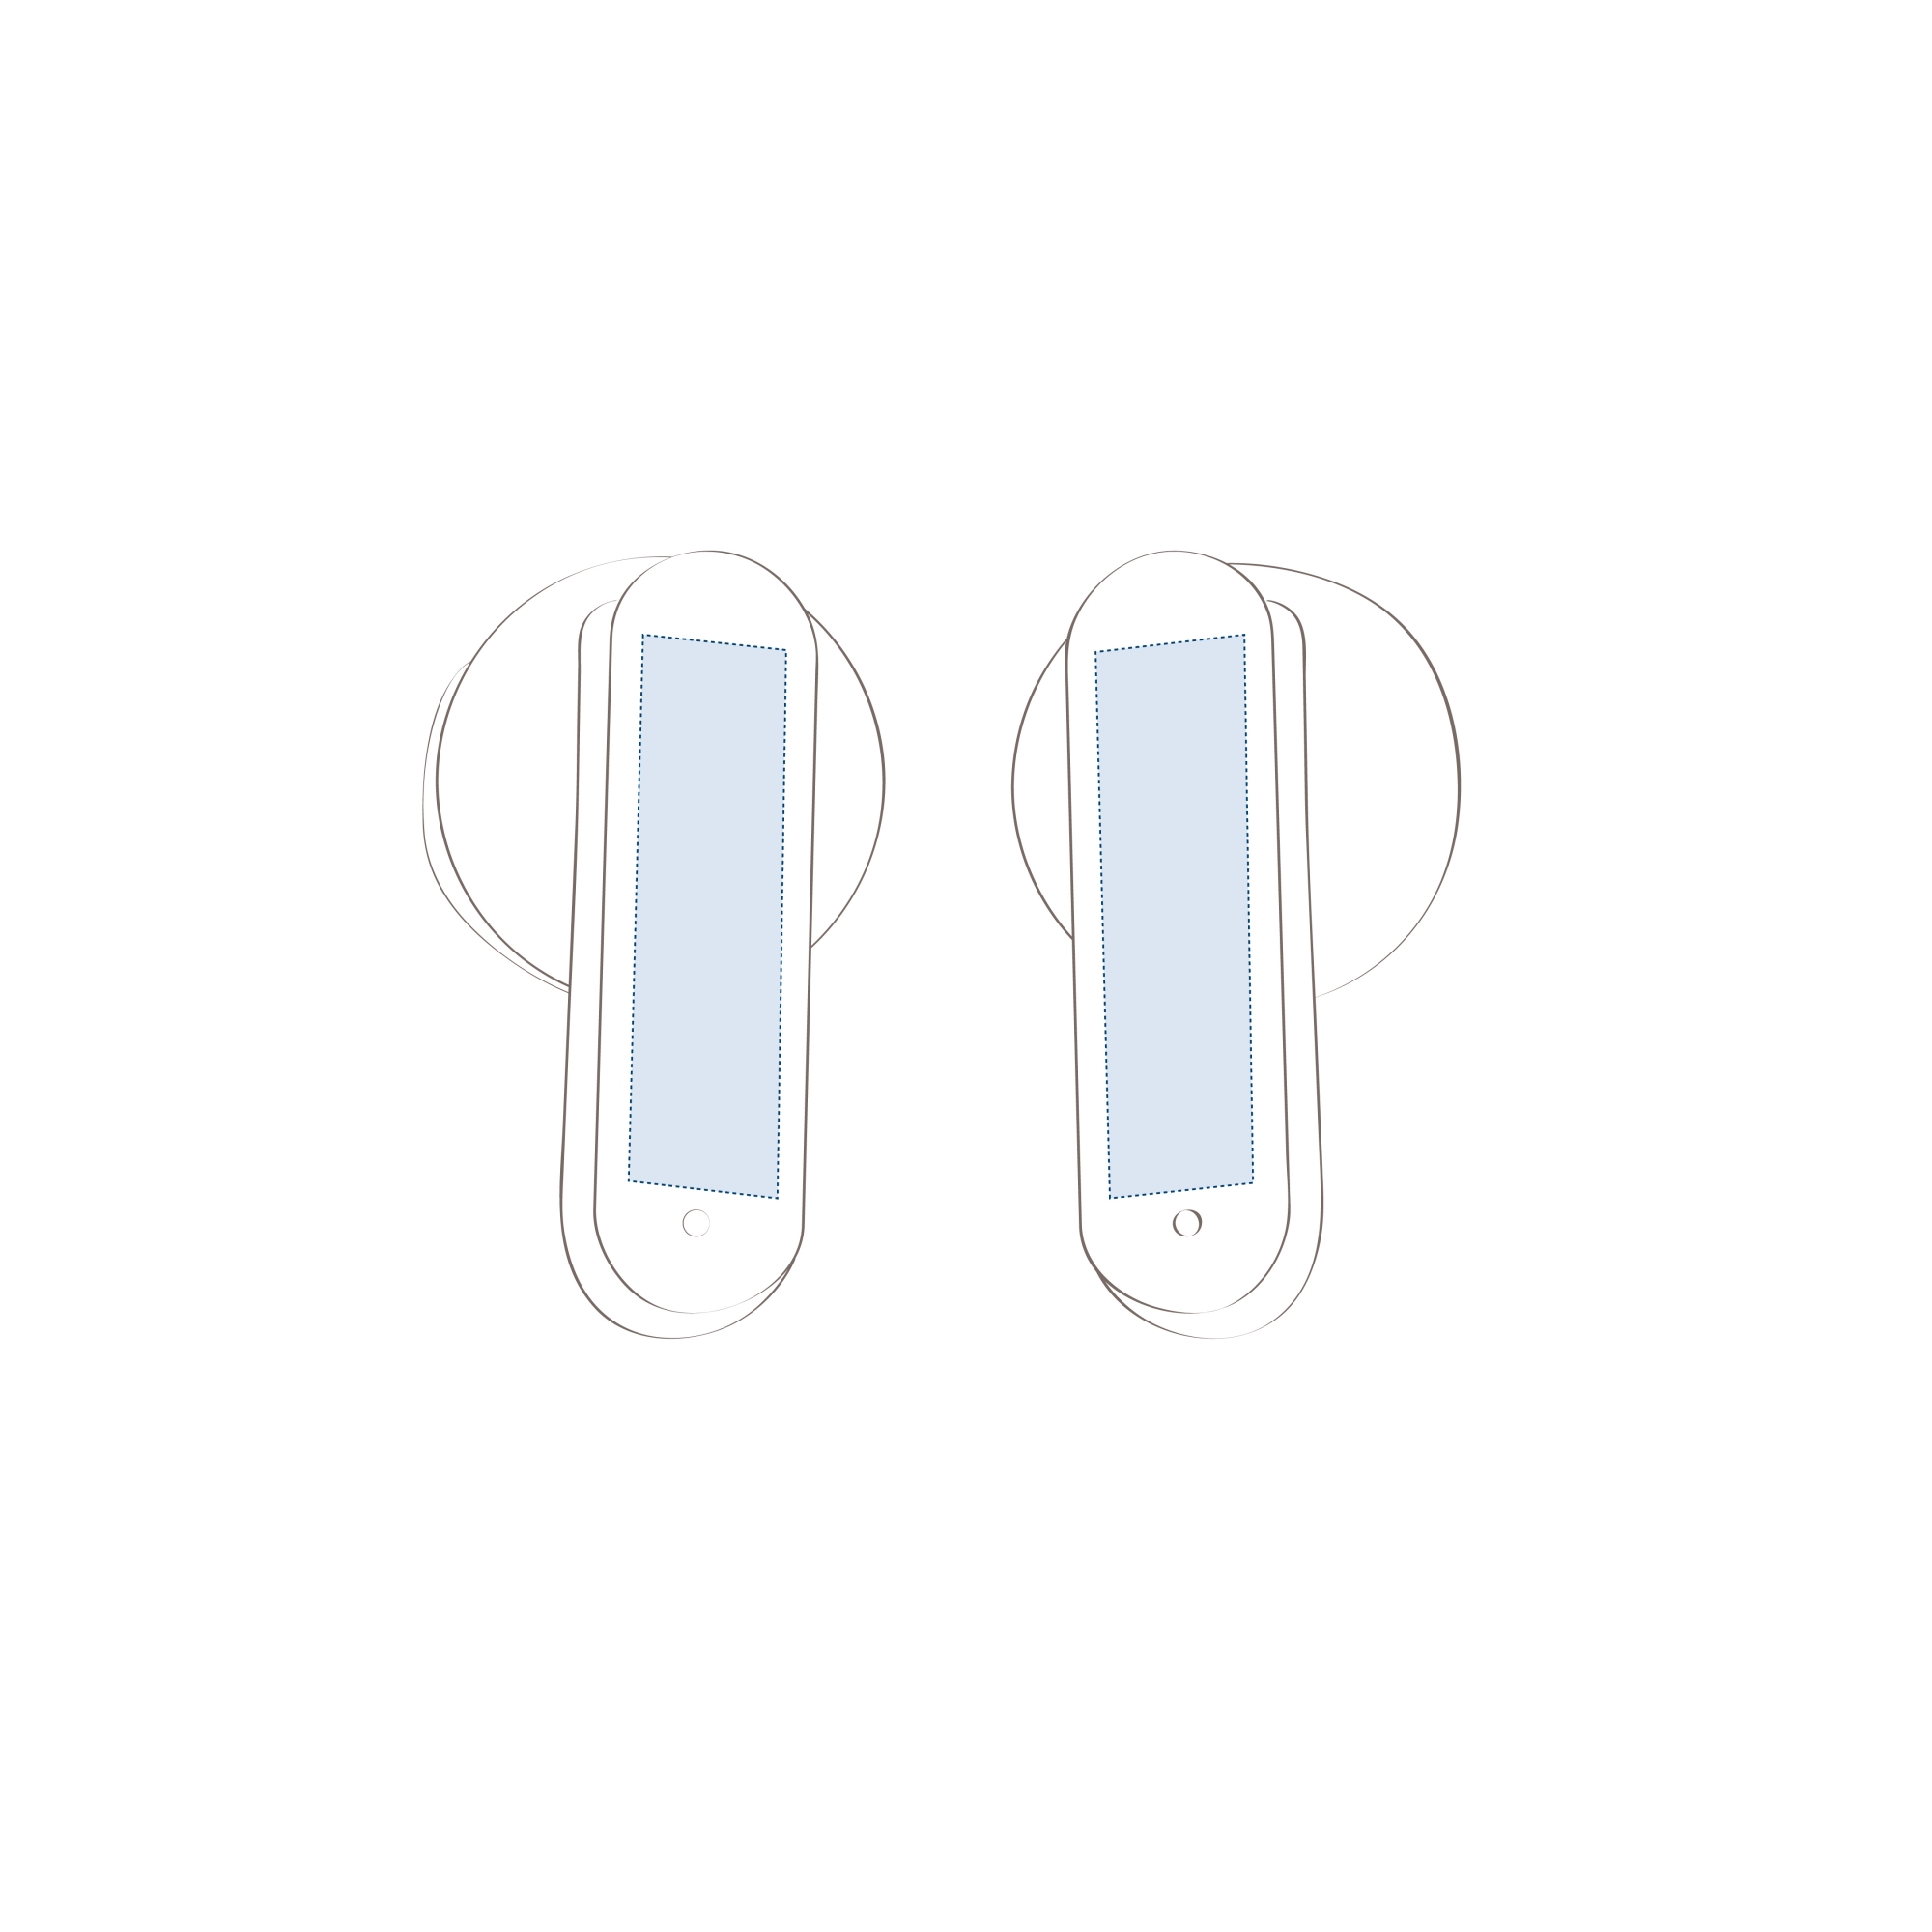 Impresión digital en el lateral de ambos auriculares (20 x 5 mm)